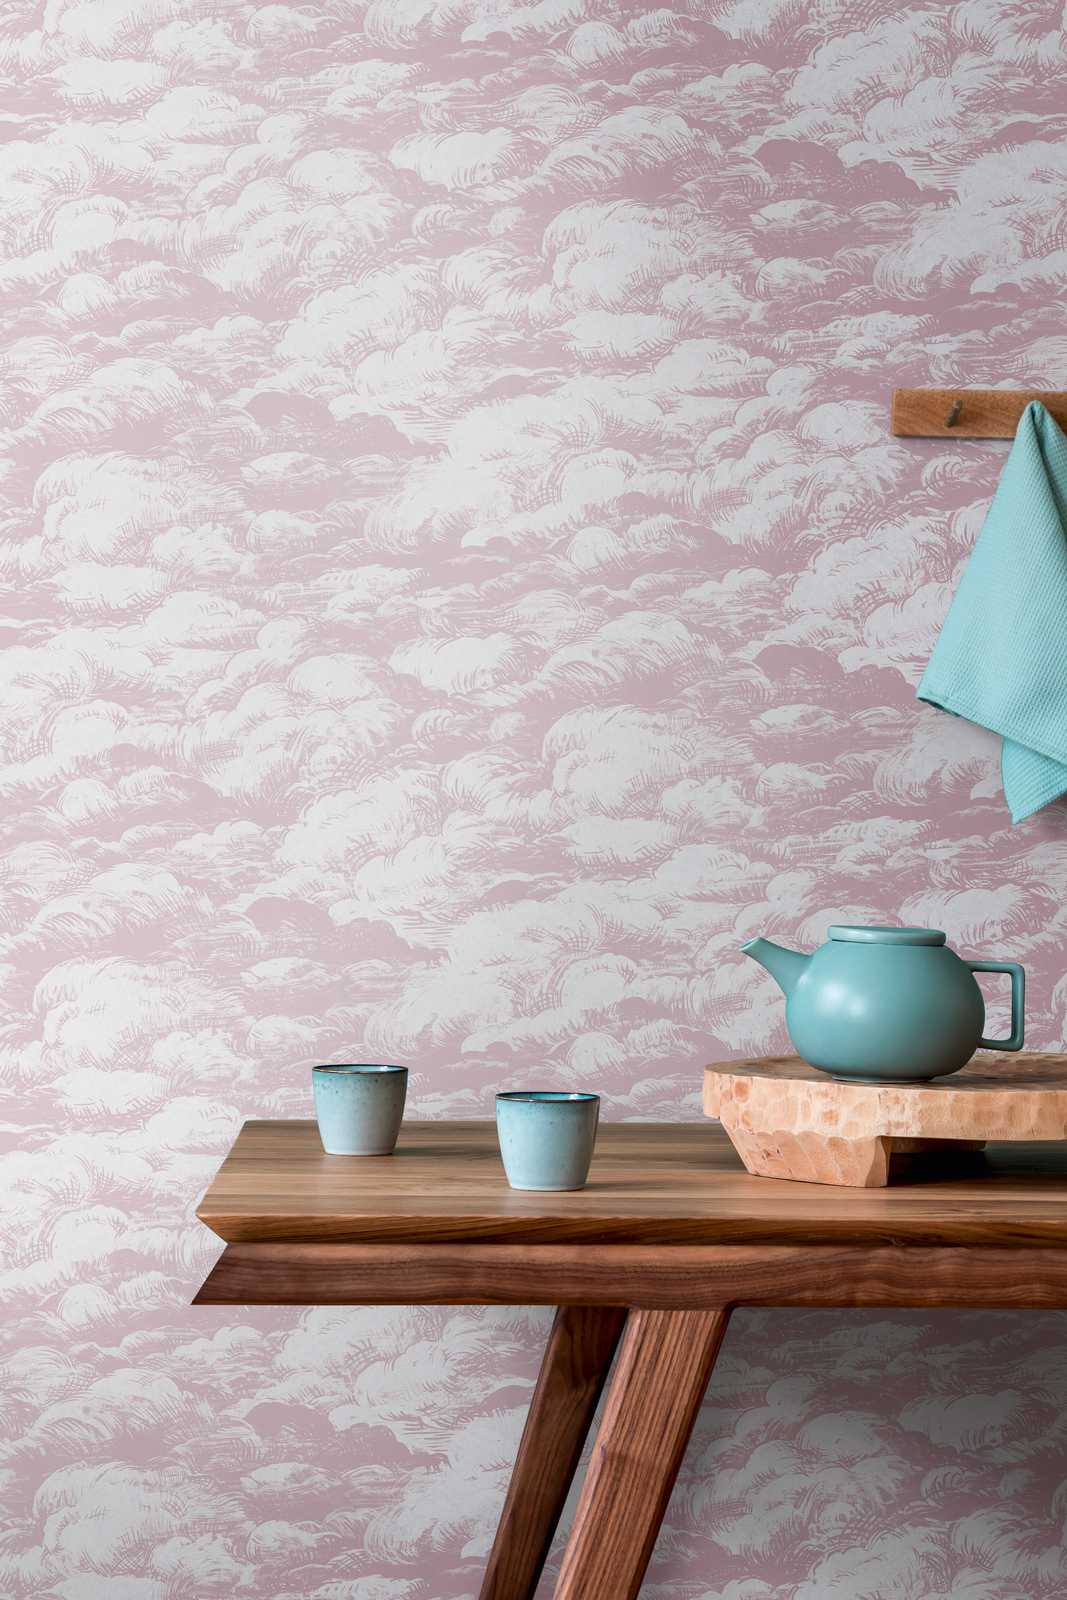             Wallpaper old pink clouds design vintage landscape - pink, white
        